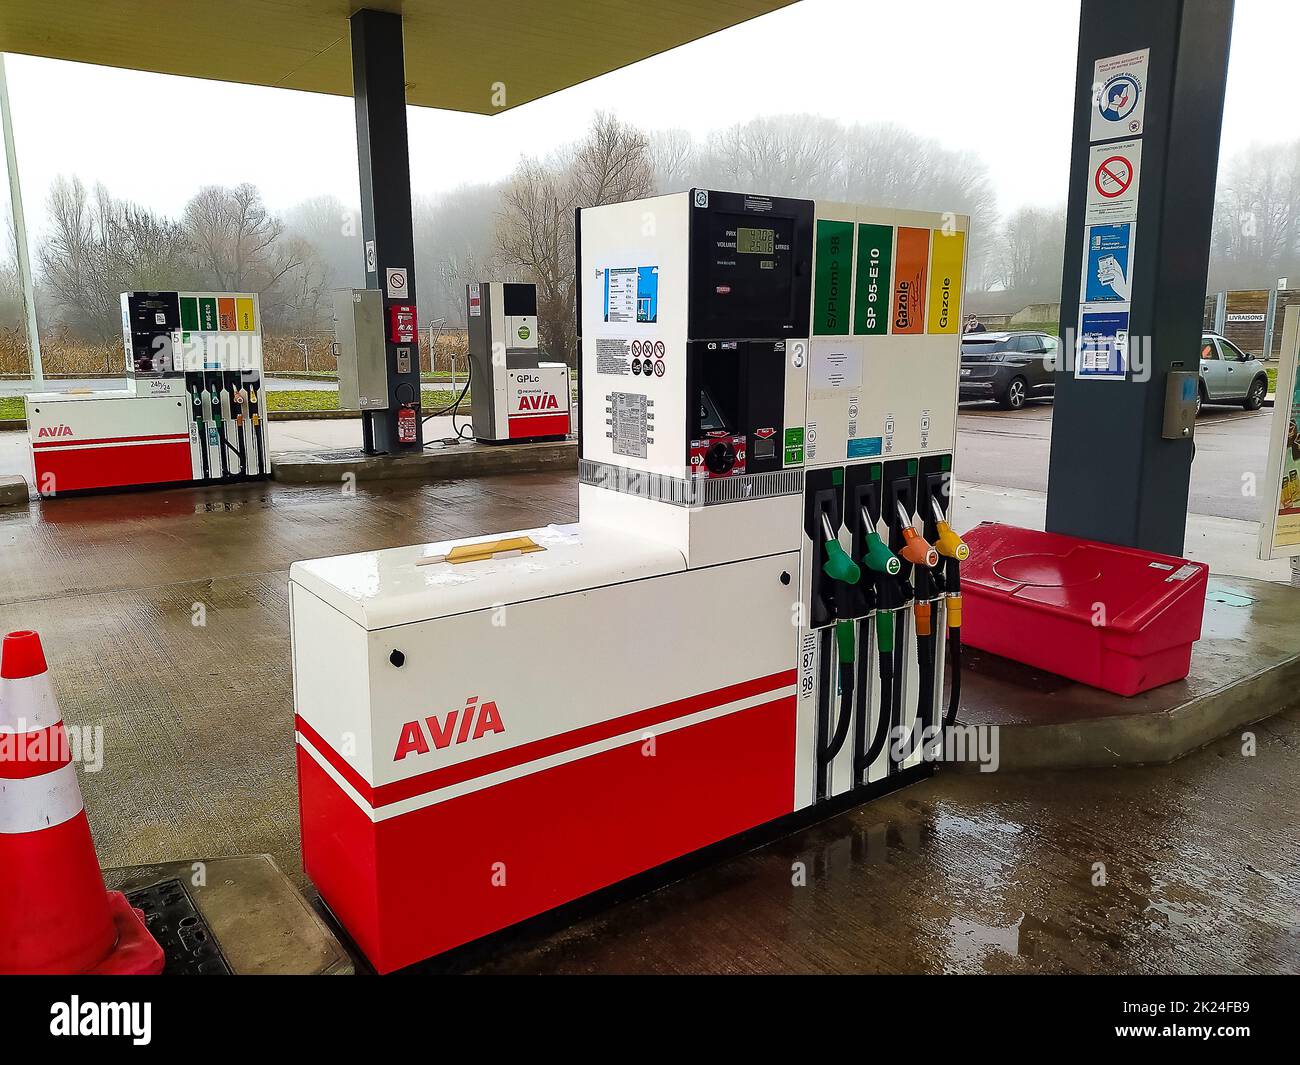 Dortmund, Deutschland - 28. Dezember 2021: Avia-Schild an der Tankstelle in Dortmund, Deutschland am 28. Dezember 2021 . Avia ist die am häufigsten verwendete gruppenunabhängige Gruppe Stockfoto